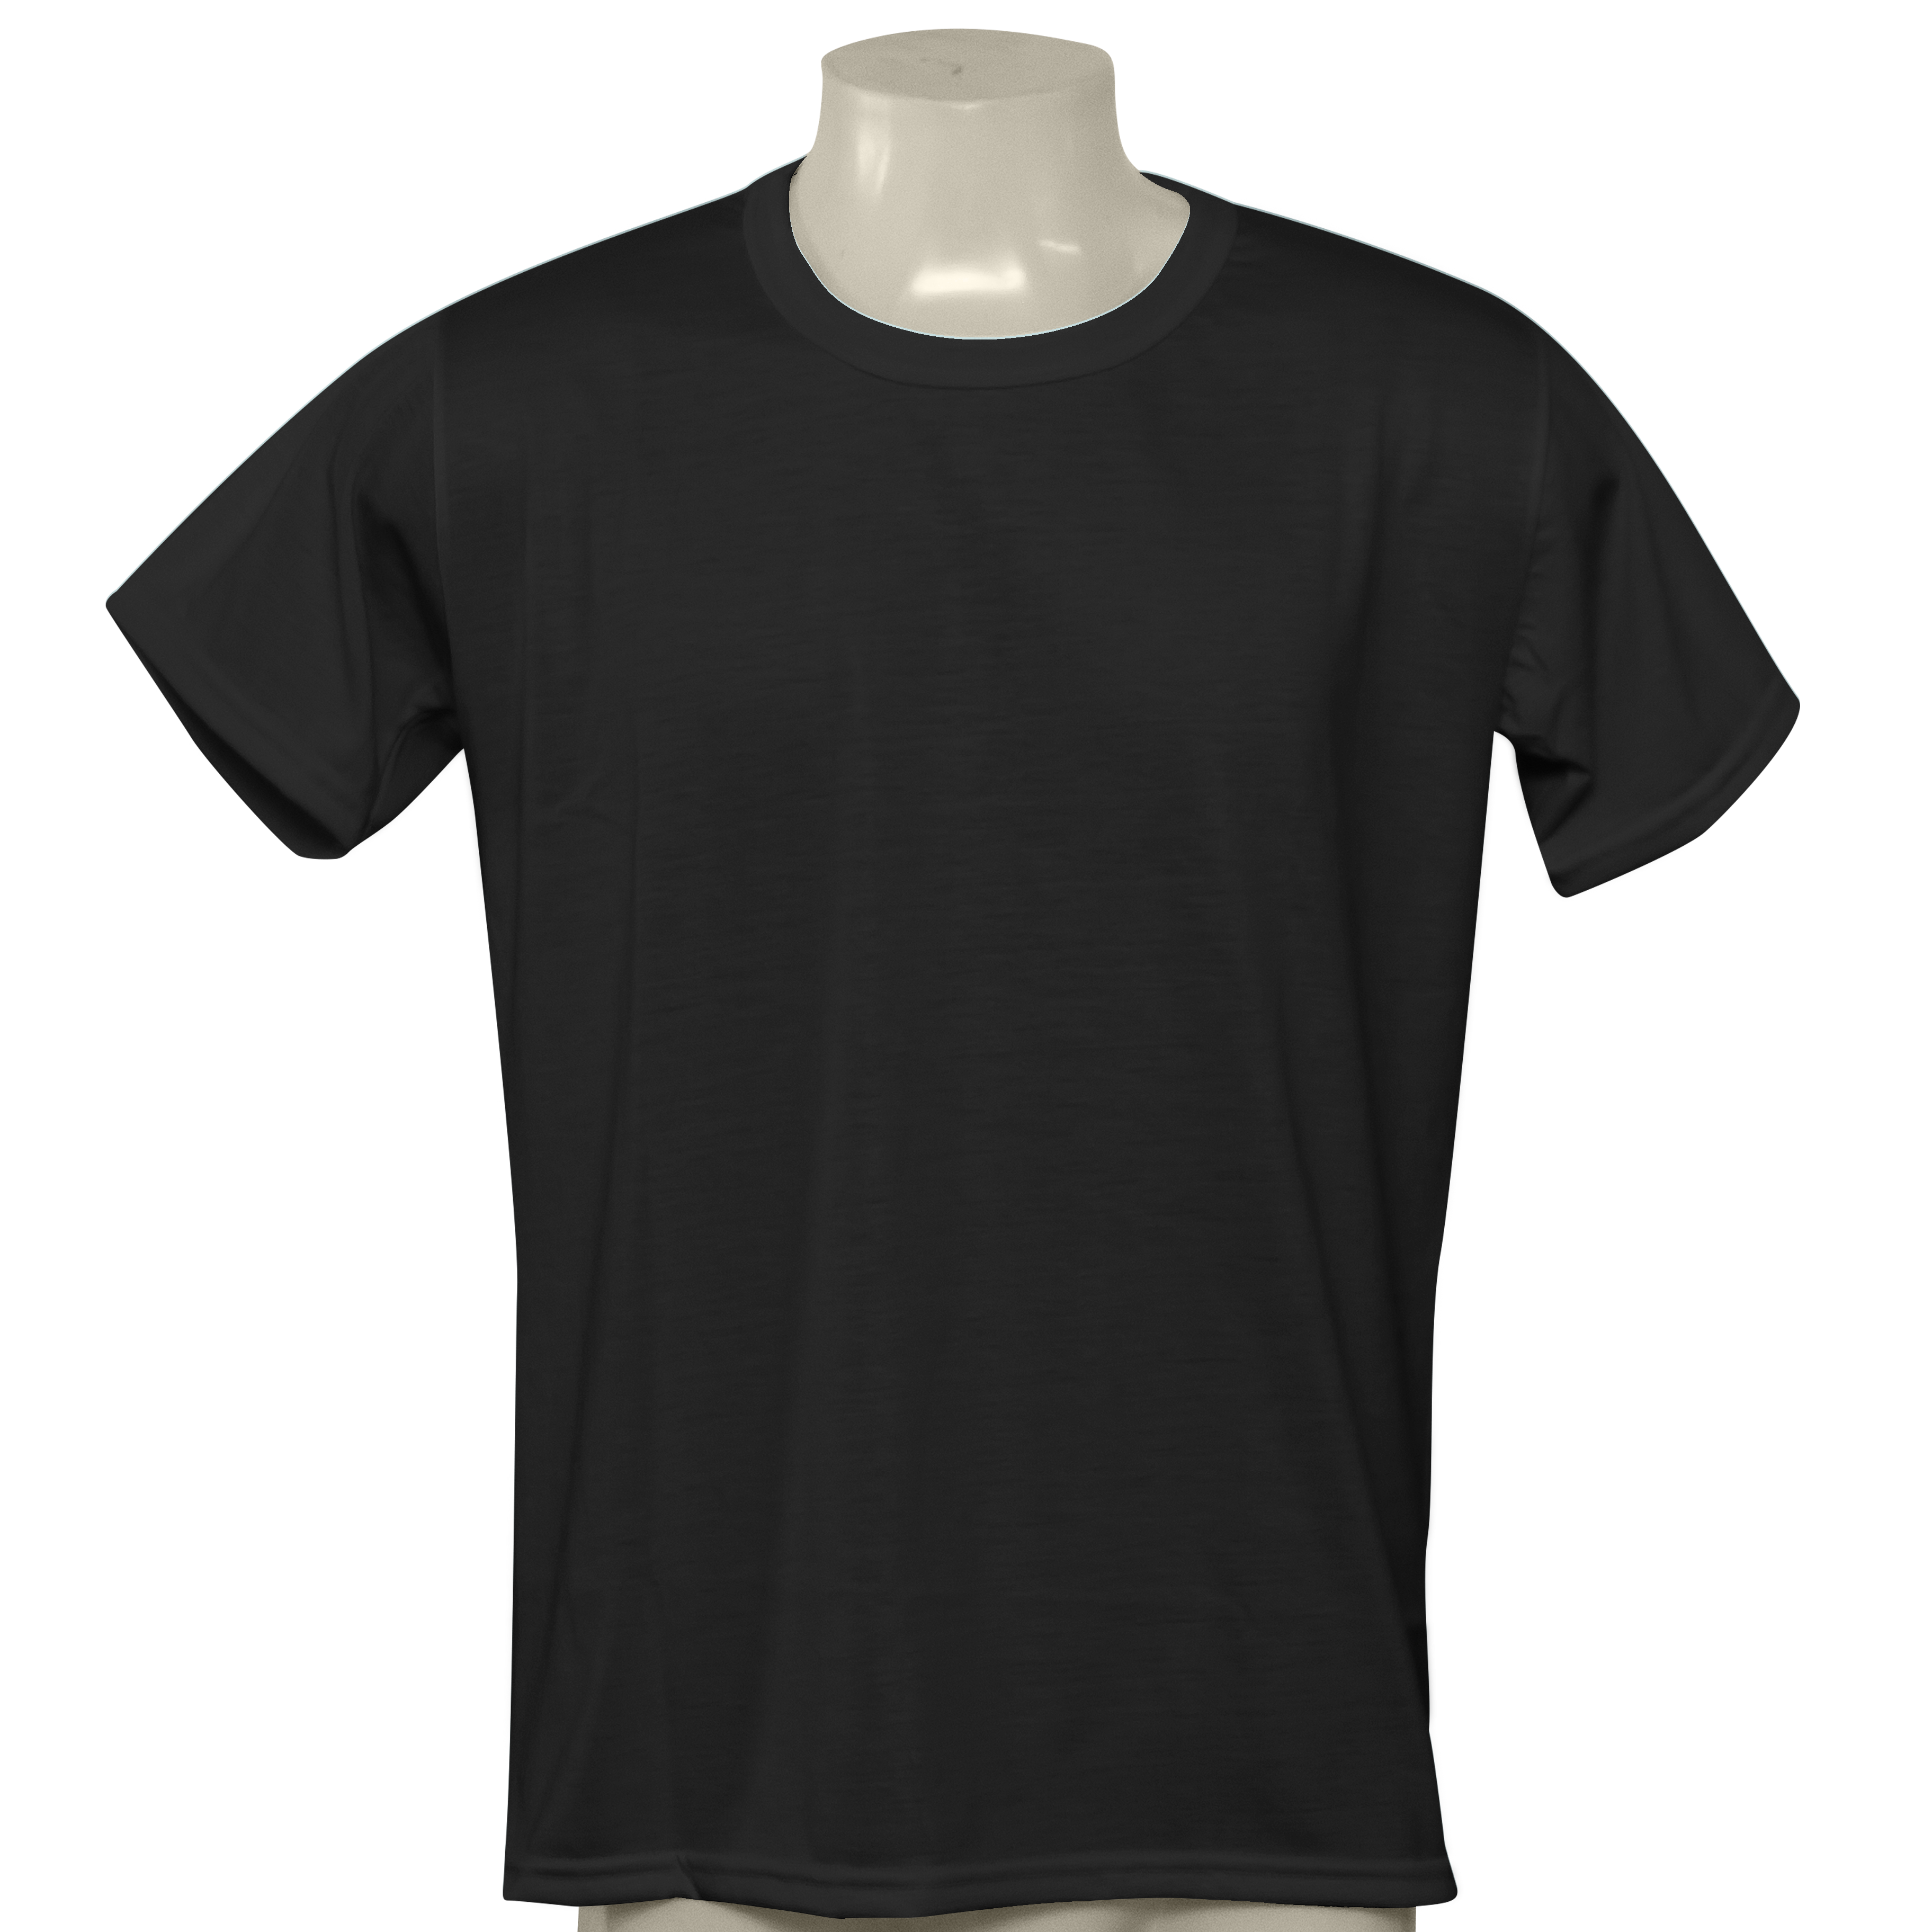 Camiseta preta, Poliéster Para Sublimação